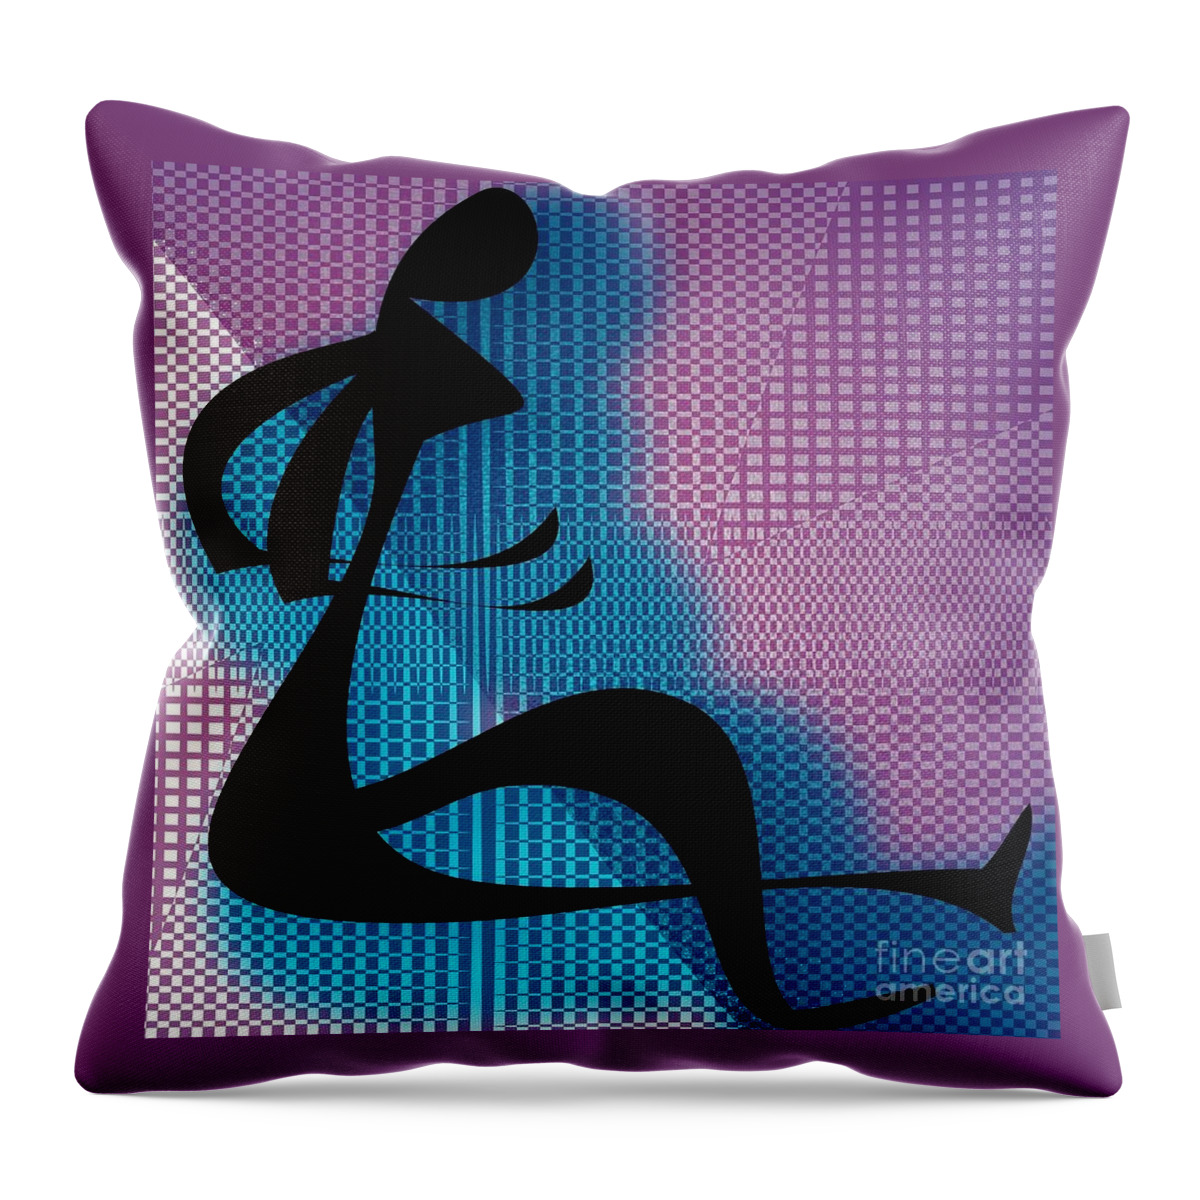 Digital Throw Pillow featuring the digital art Form by Iris Gelbart